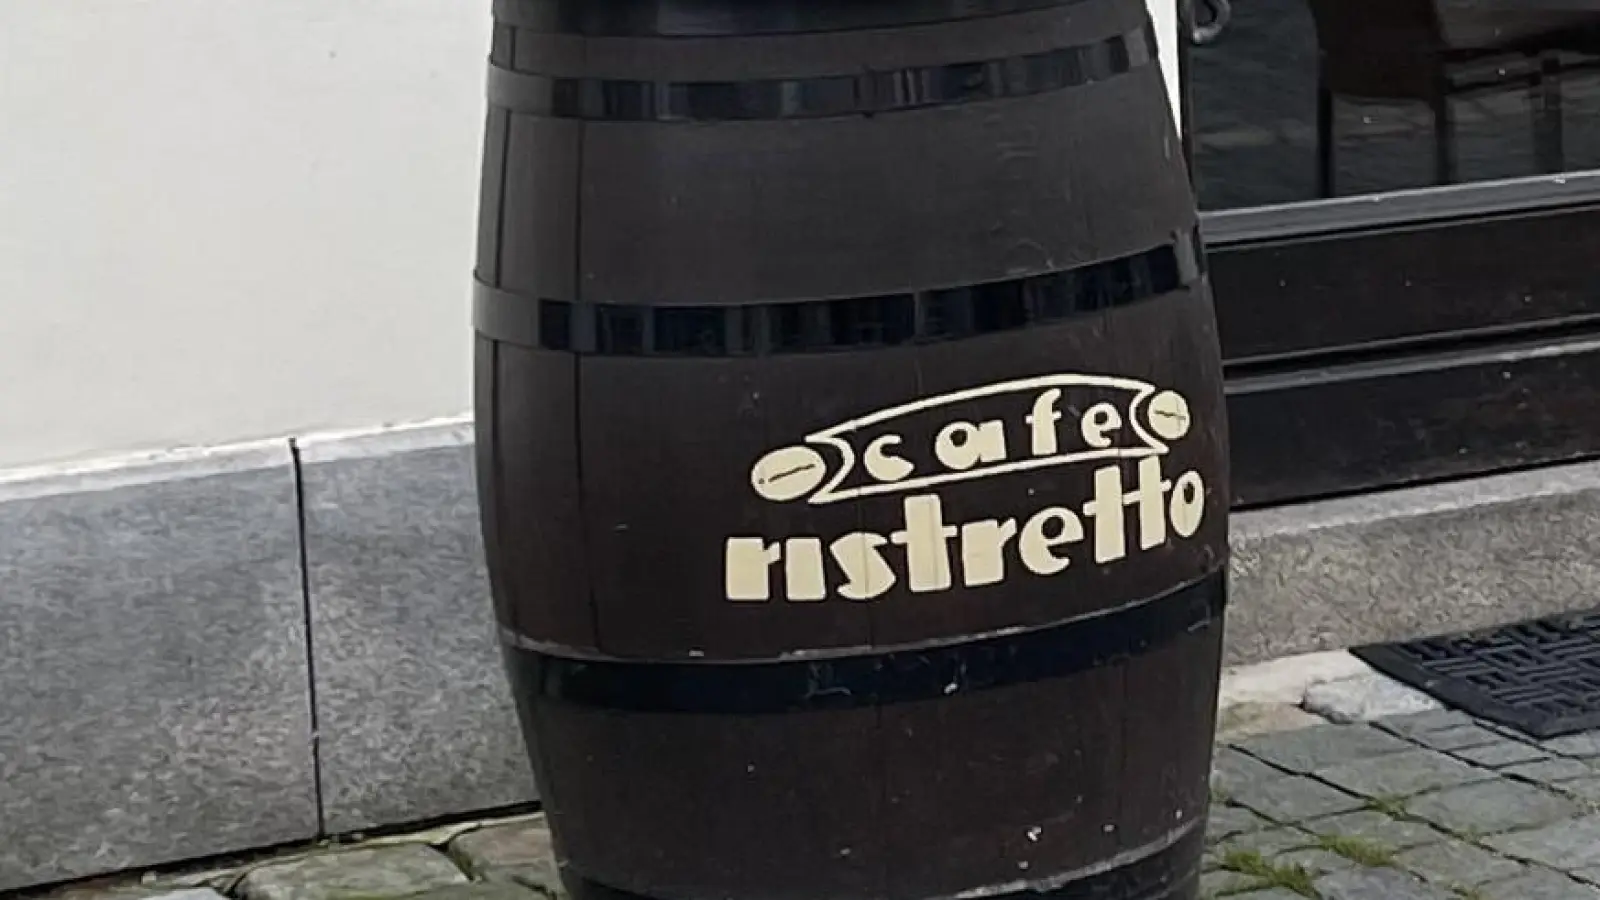 Am Wochenende haben Unbekannte vor dem Café Ristretto in Weiden randaliert. Dabei haben sie auch dieses Fass gestohlen.  (Bild: Martin Sauer)